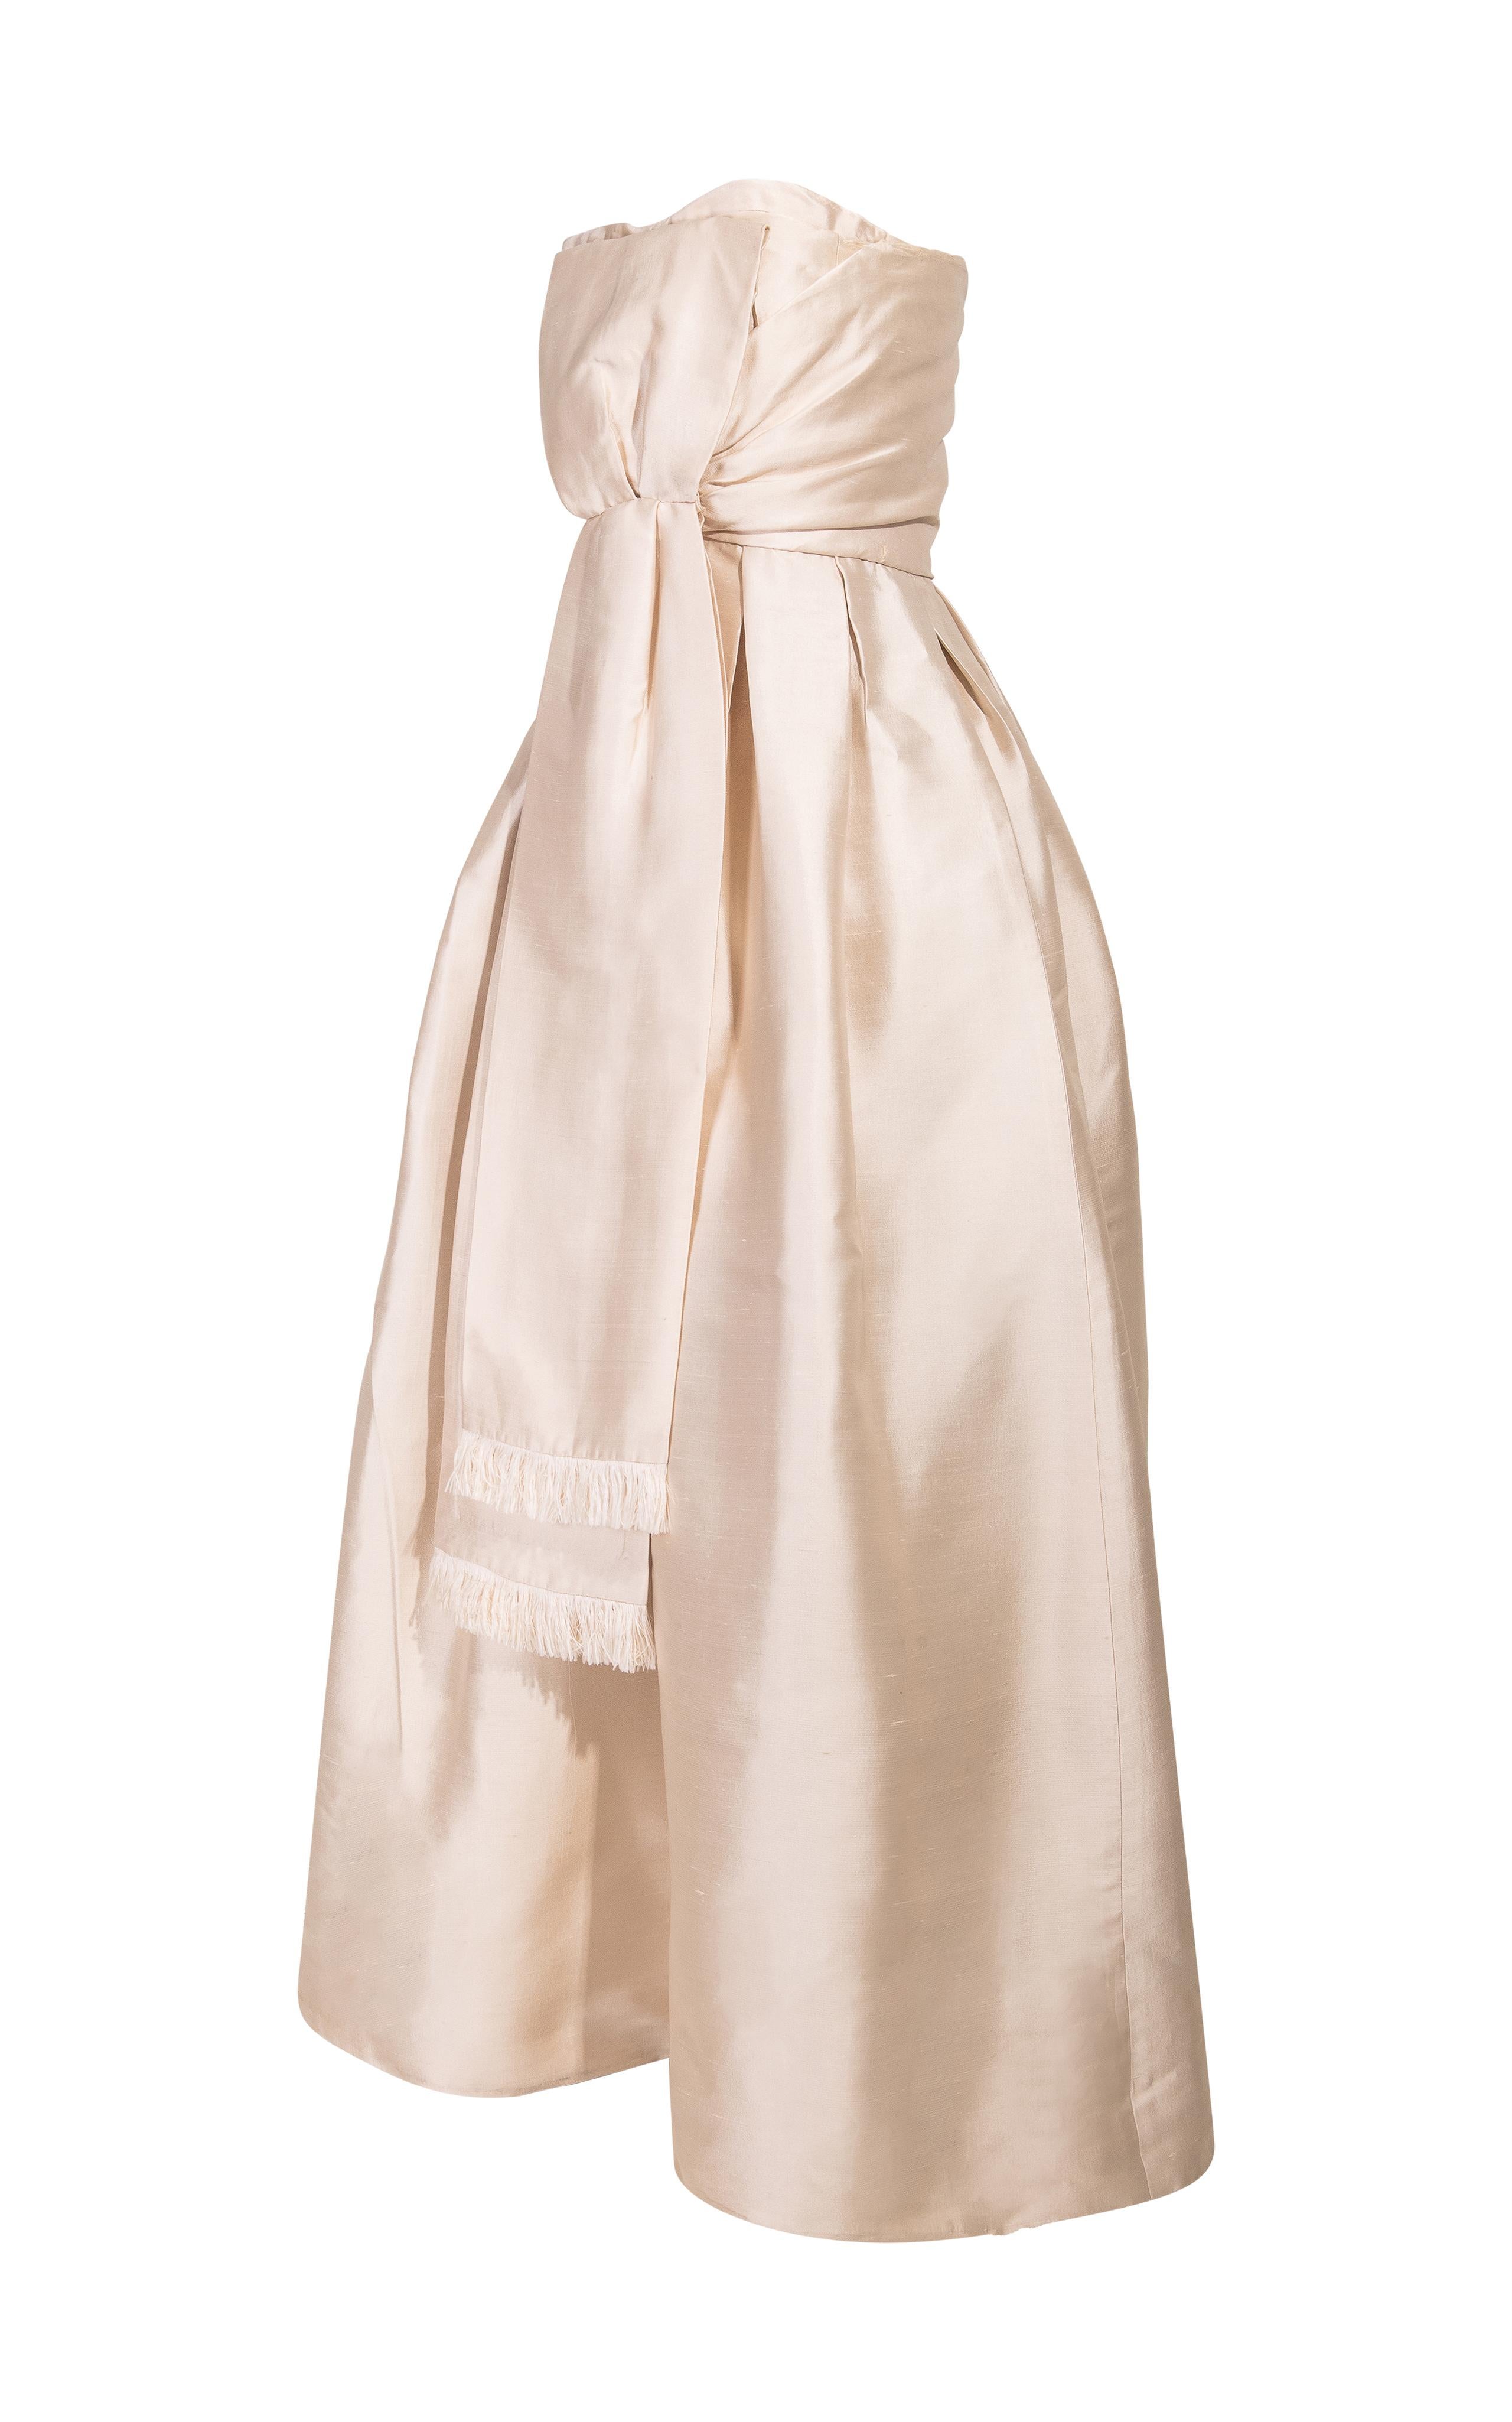 1958 Robe de Christian Dior London par Marc Bohan. Superbe et très rare robe ramasse-miettes avec taille ajustée et jupe ample, avec corset intégré et désossé. En très bon état vintage avec une usure conforme à l'âge ; usure mineure sur les côtés et